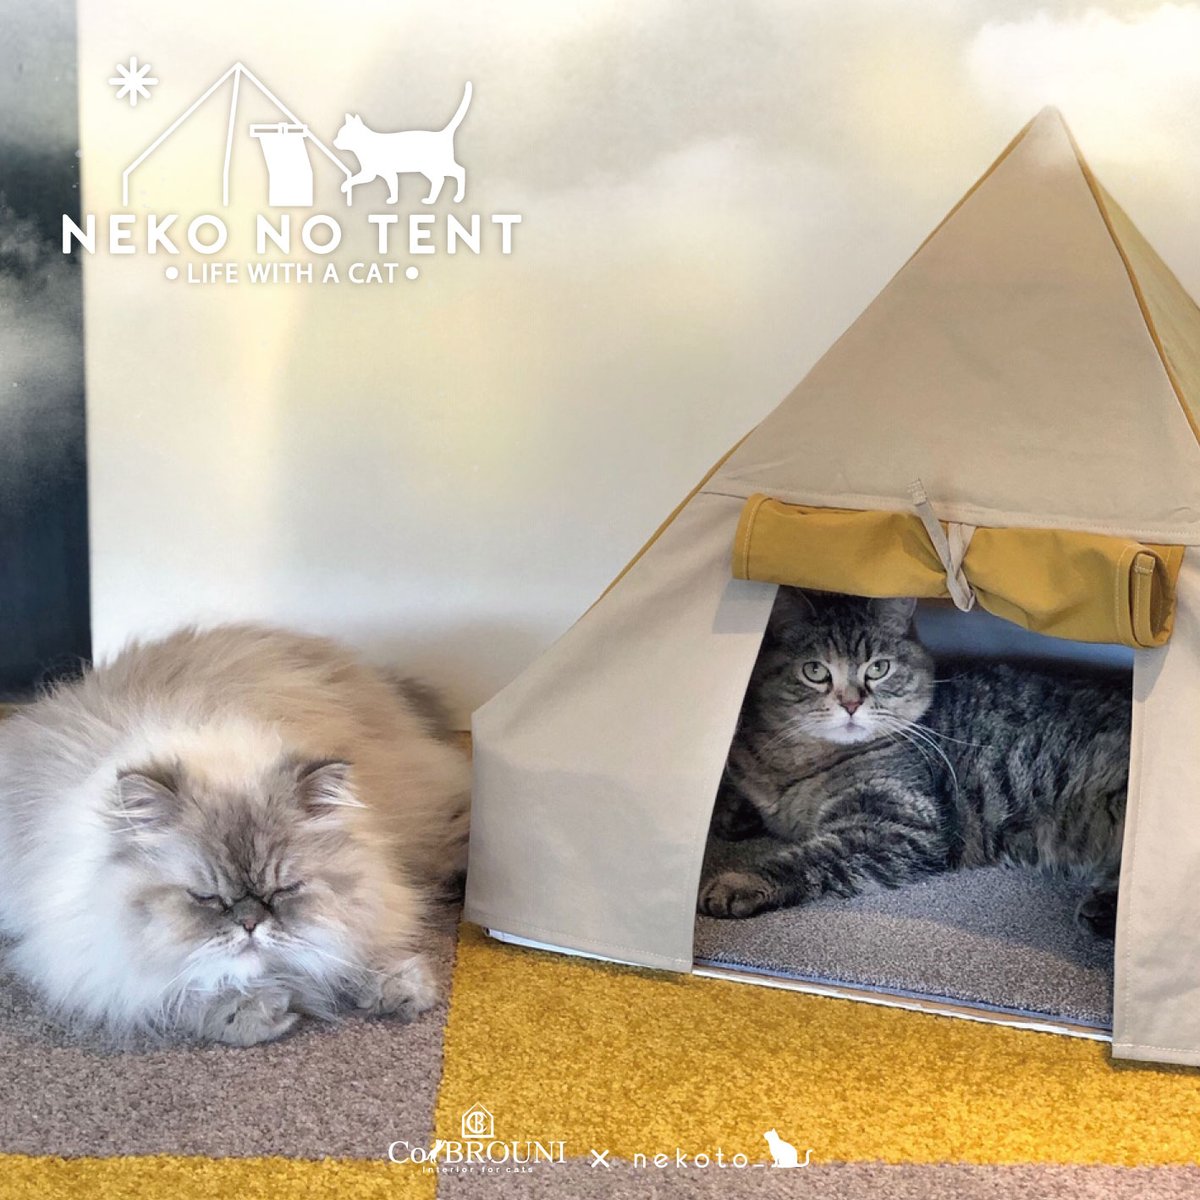 公式 Nekoto 猫のテント モニターにゃんずのご紹介 Instagram Muu Bonaparte さんです 天気のいい空の下で仲良くキャンプ マスタードのカーペットめちゃくちゃ可愛いのでおすすめです むぅぽこちゃんは猫のテントの作り方をおしゃれな動画